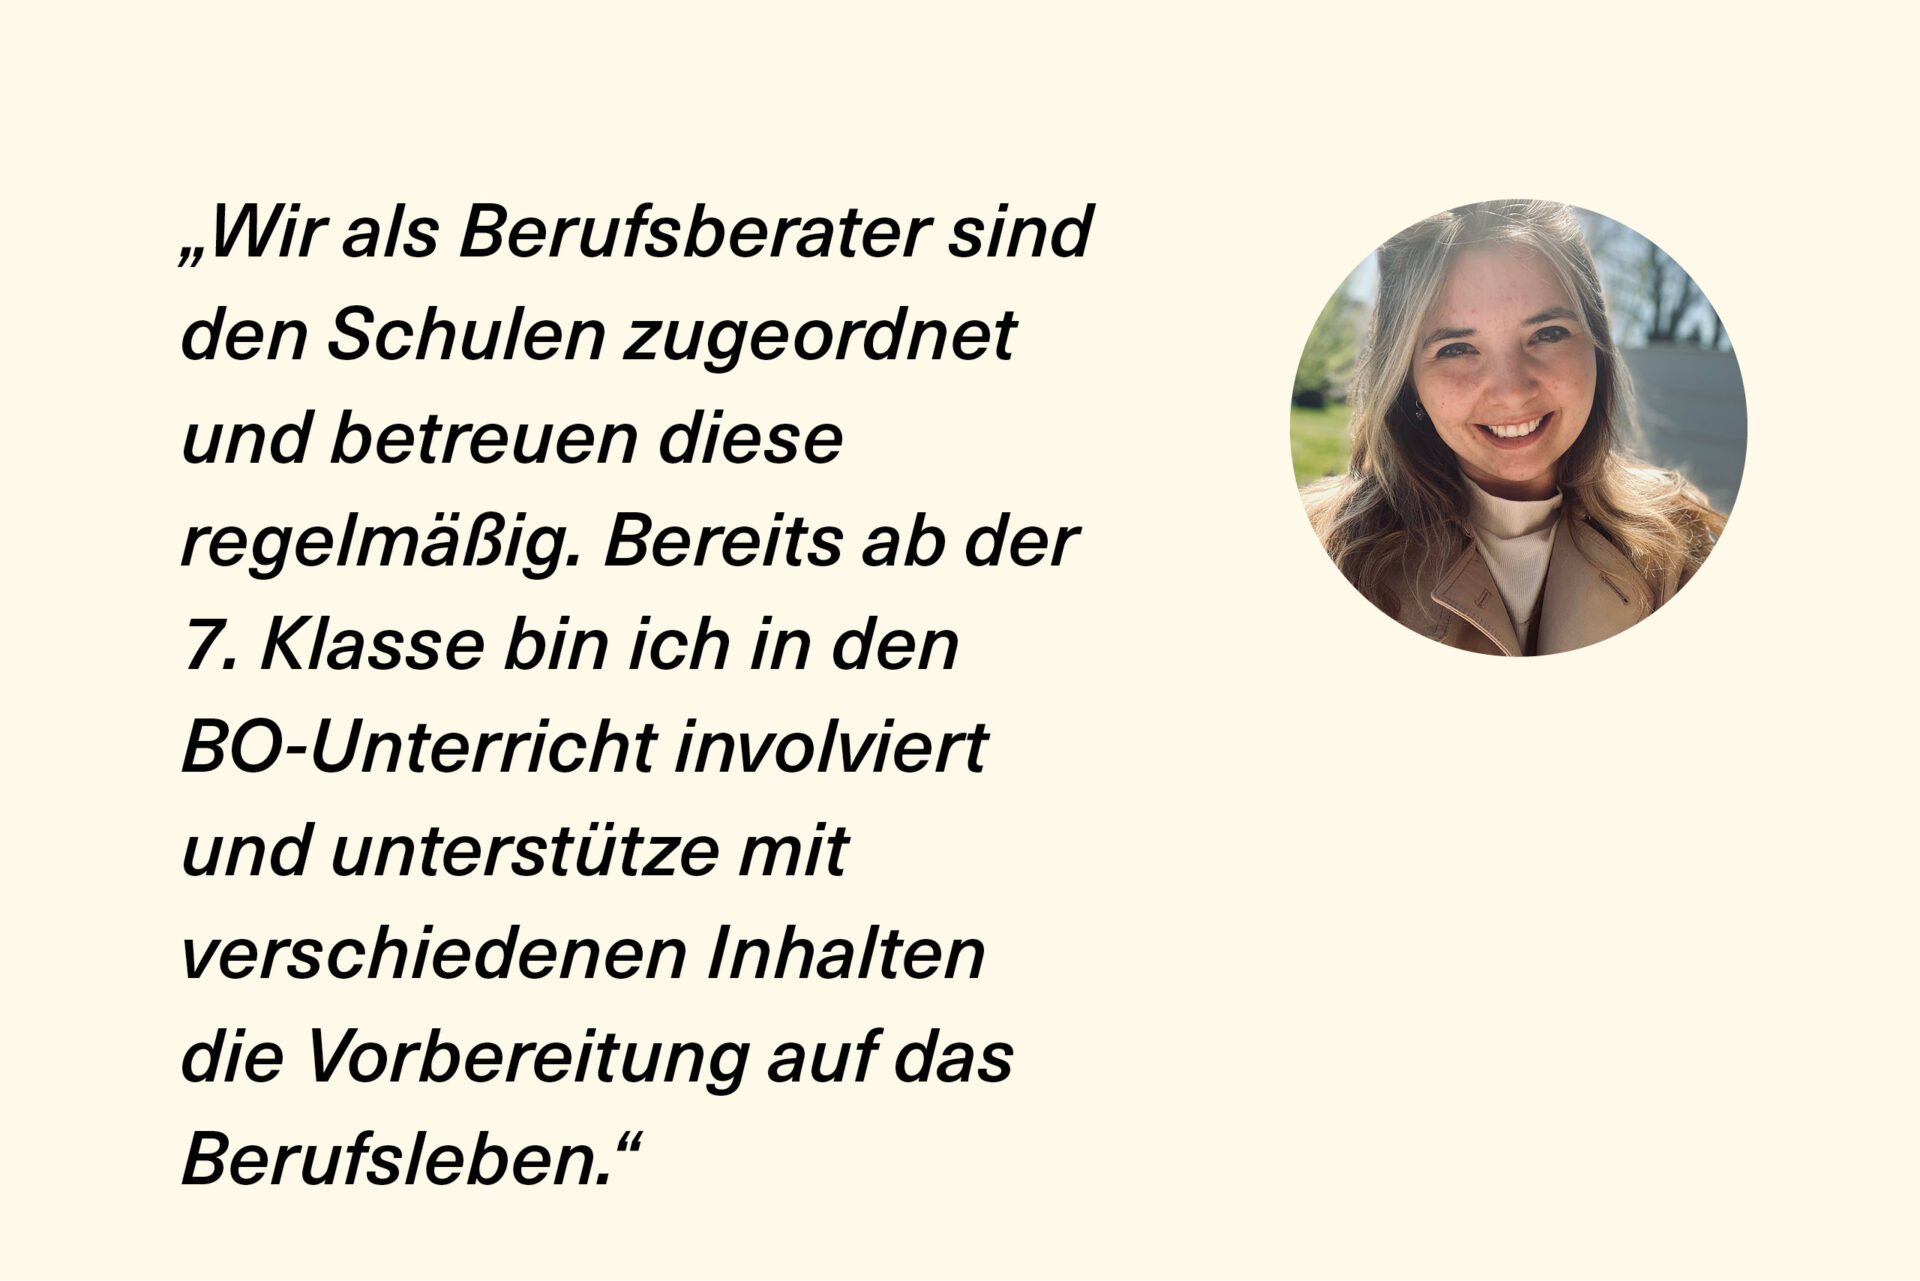 LOTSIN DURCH DIE VIELFALT DER MÖGLICHKEITEN – An der Gemeinschaftsschule Bredstedt sieht Berufsberaterin Rie Jordt ihre Aufgabe als Zukunftsgestaltung